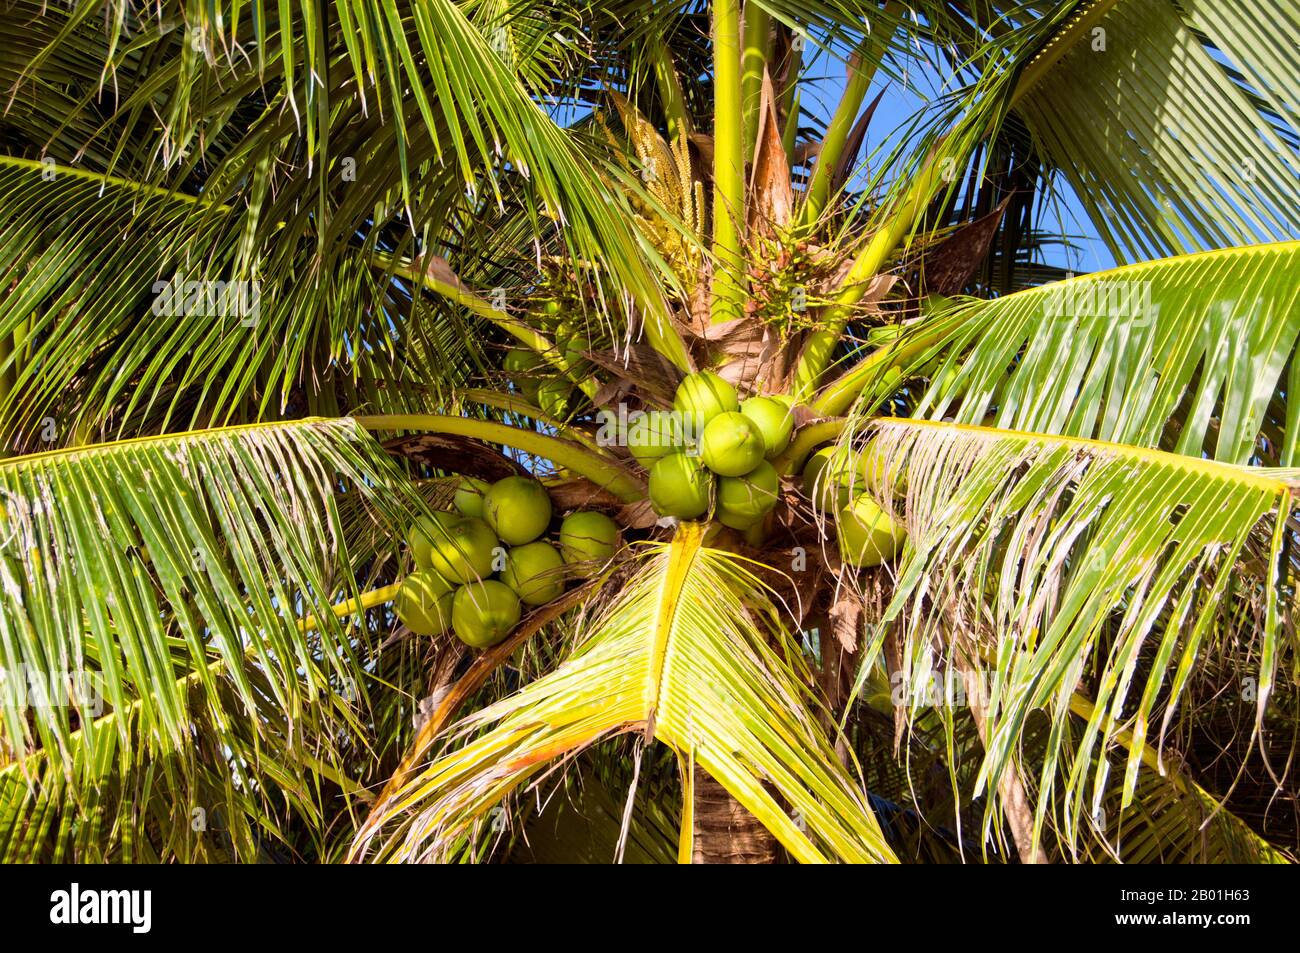 Thailand: Kokospalme, Ao Taling Ngam, Ko Samui. Die Kokospalme, auch Cocos nucifera genannt, wird nicht nur wegen ihrer Schönheit, sondern auch als lukrative Ernte geschätzt. Es wird in der gesamten Südsee und im Indischen Ozean angebaut und bietet Essen, Getränke, Unterkünfte, Transport, Treibstoff, Medizin und sogar Kleidung für Millionen von Menschen. Die Kokospalme lebt etwa 60 Jahre und produziert jährlich rund 70-80 Nüsse. Die Bäume sind manchmal 40-50 Meter (130-160 Fuß) hoch. Stockfoto